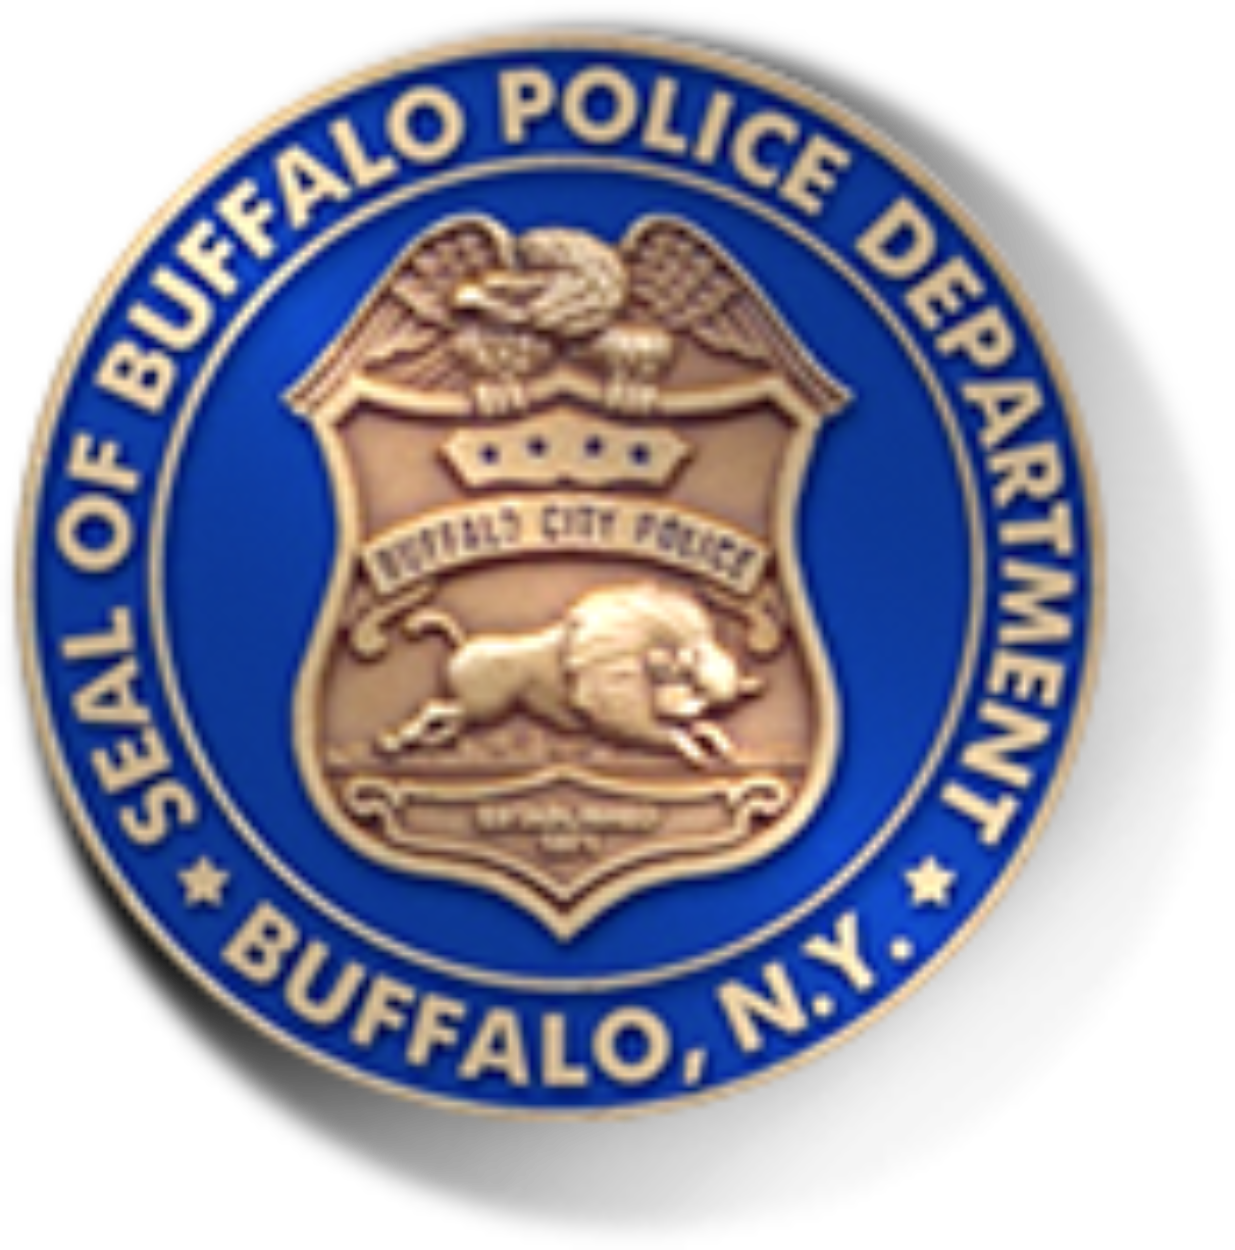 bullafo-police